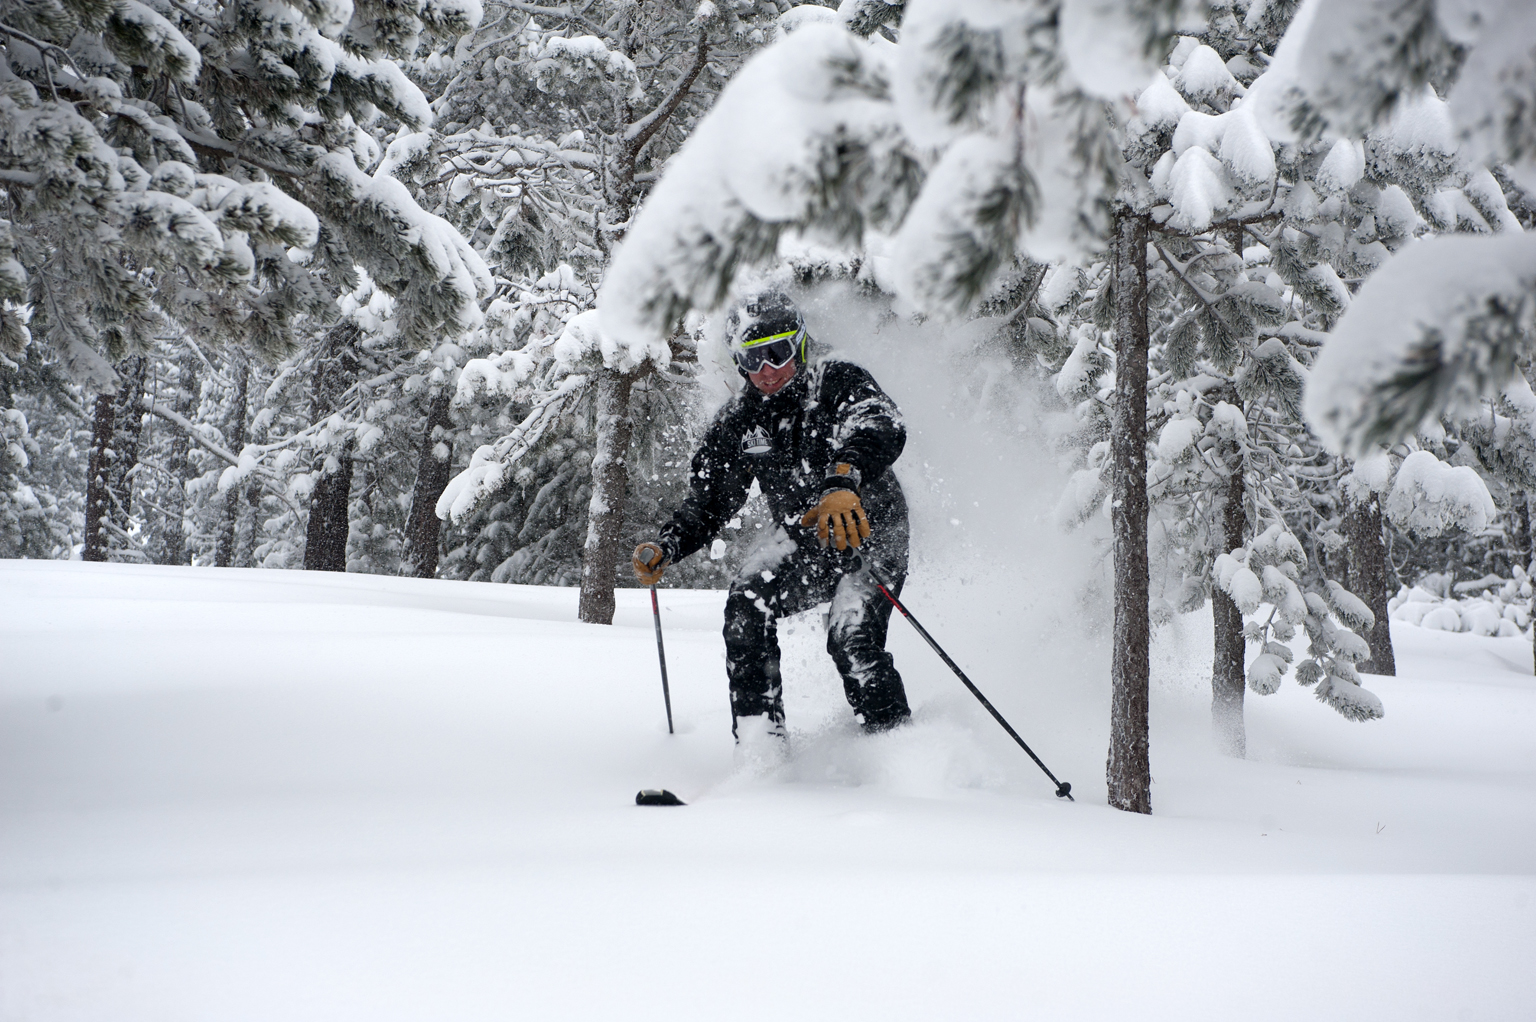 Esquiada en powder con esquis de pista. Última nevada de temporada 2014-2015.